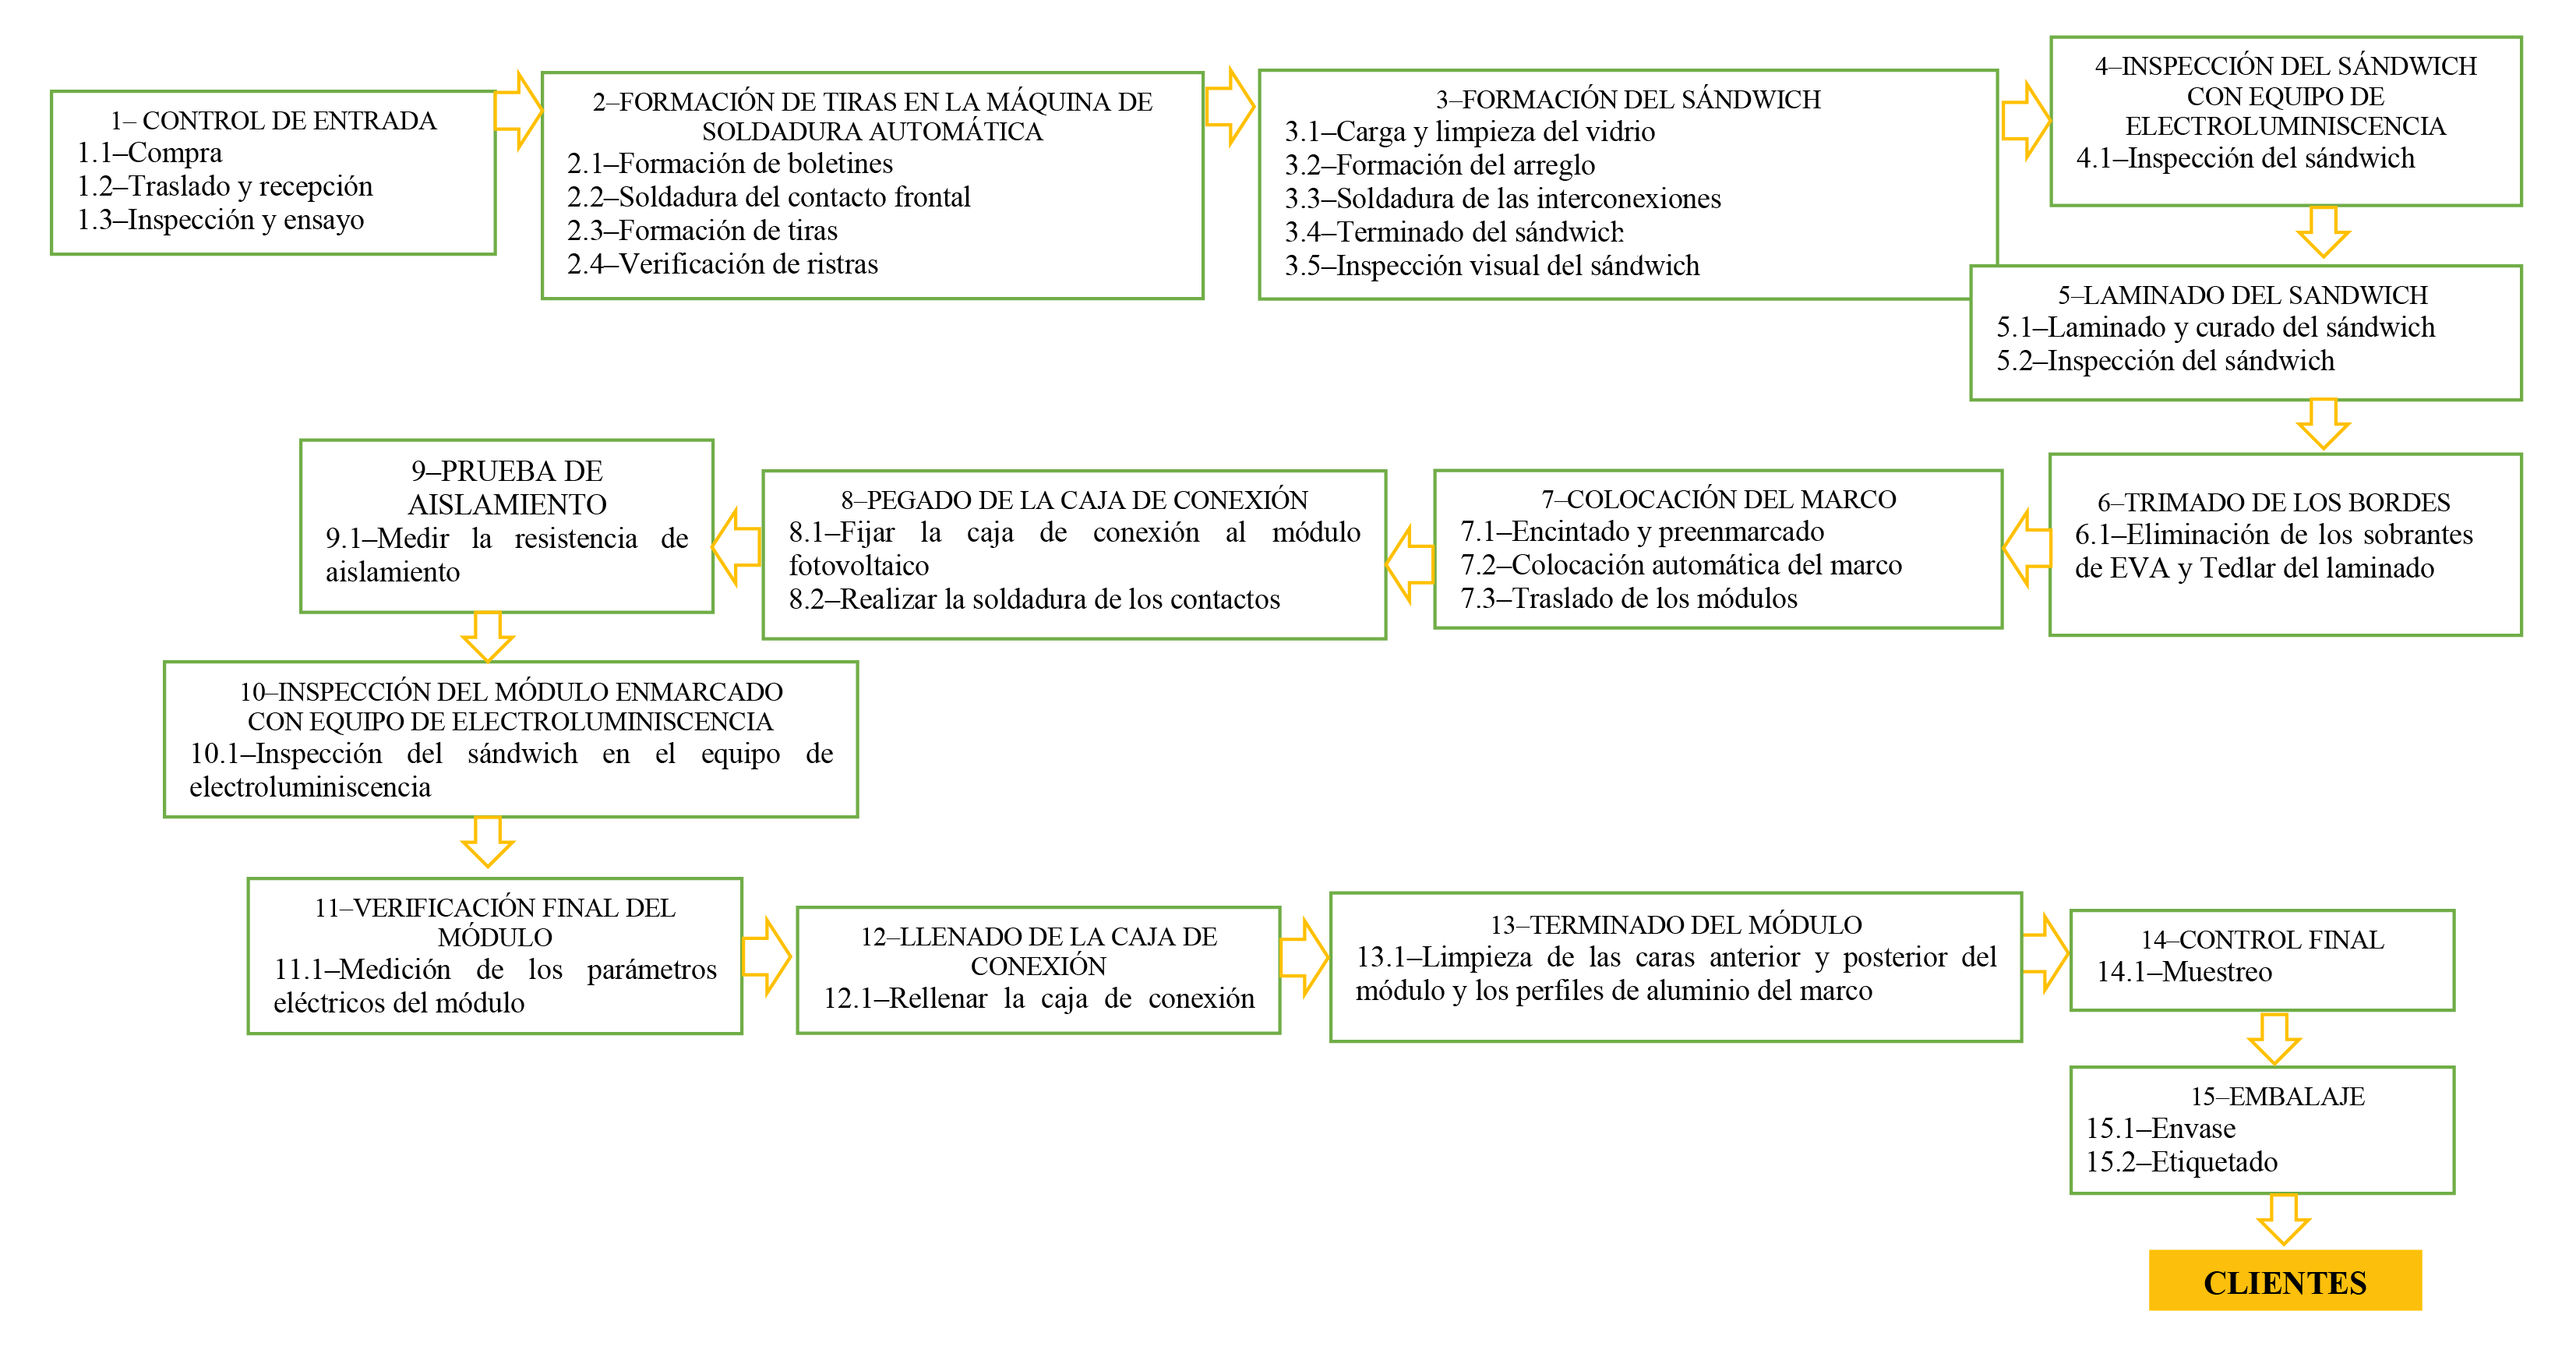 Procesos claves en la fabricación de
paneles fotovoltaicos en la empresa Componentes Electrónicos, Pinar del Río